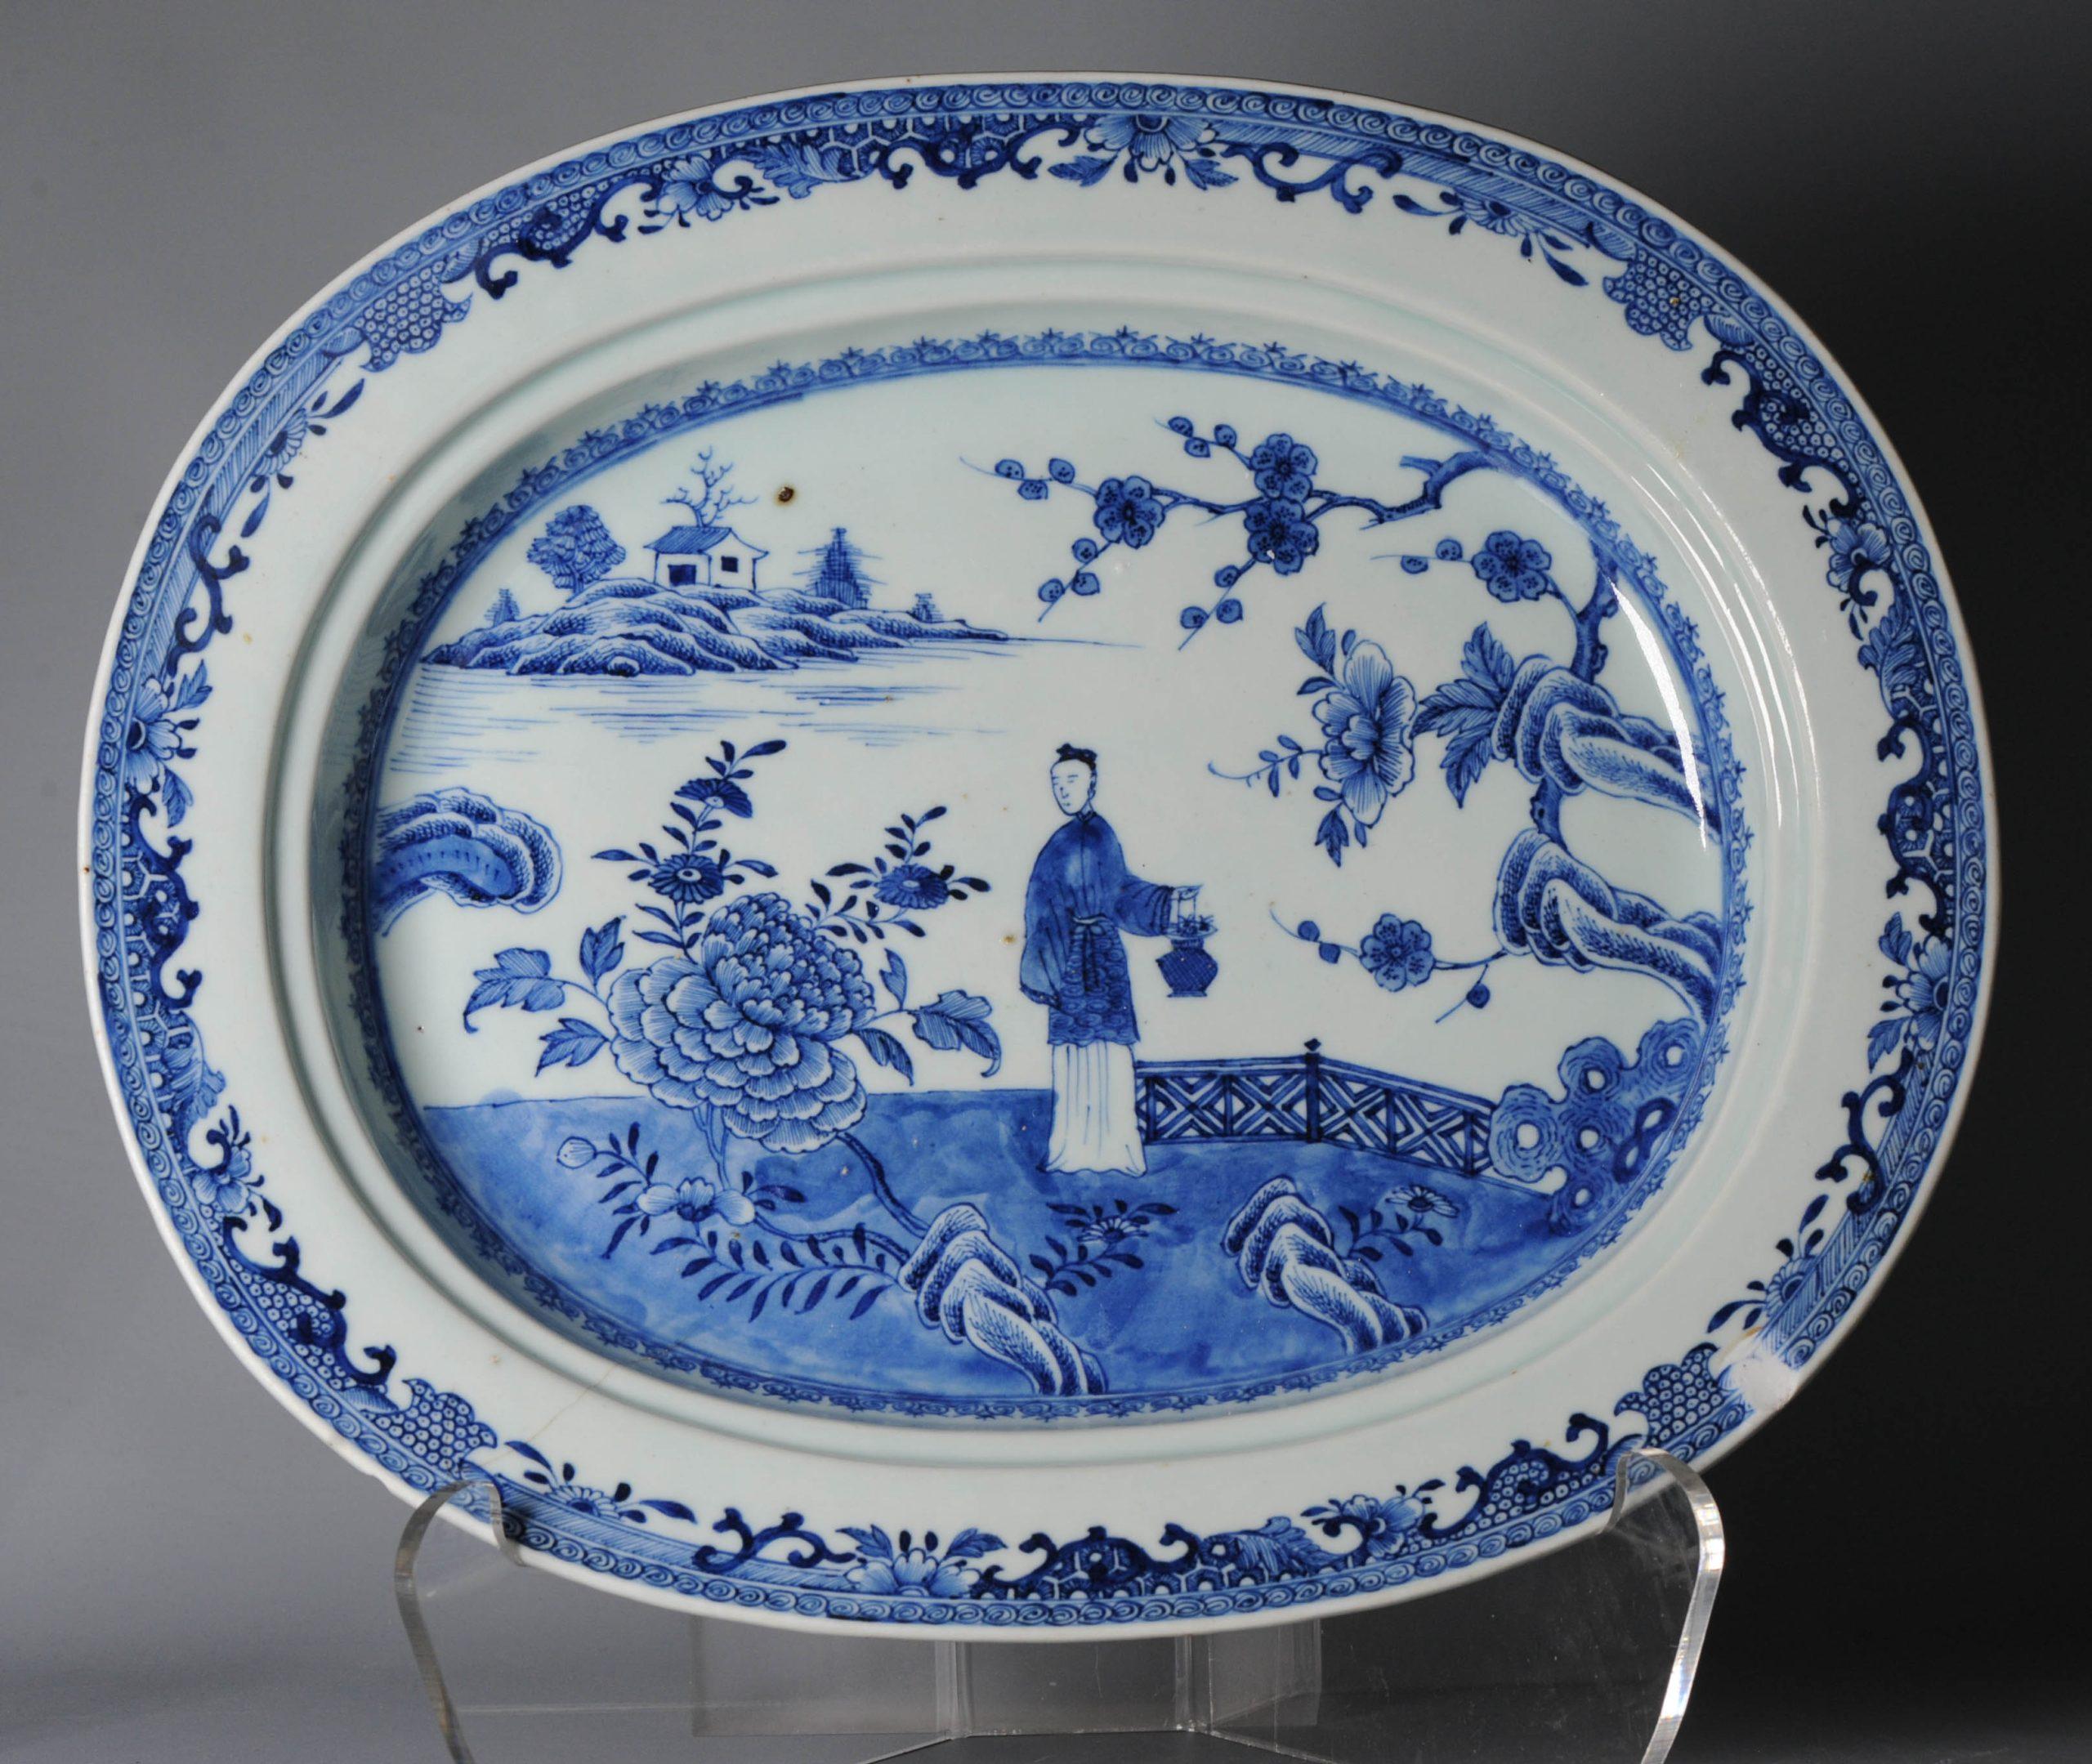 Cette pièce est un support pour servir de l'eau chaude, XVIIIe siècle, période Qing. Nous connaissons tous les plats à eau chaude, mais une pièce de cette taille est unique dans l'histoire de notre entreprise. L'idée est de verser de l'eau chaude